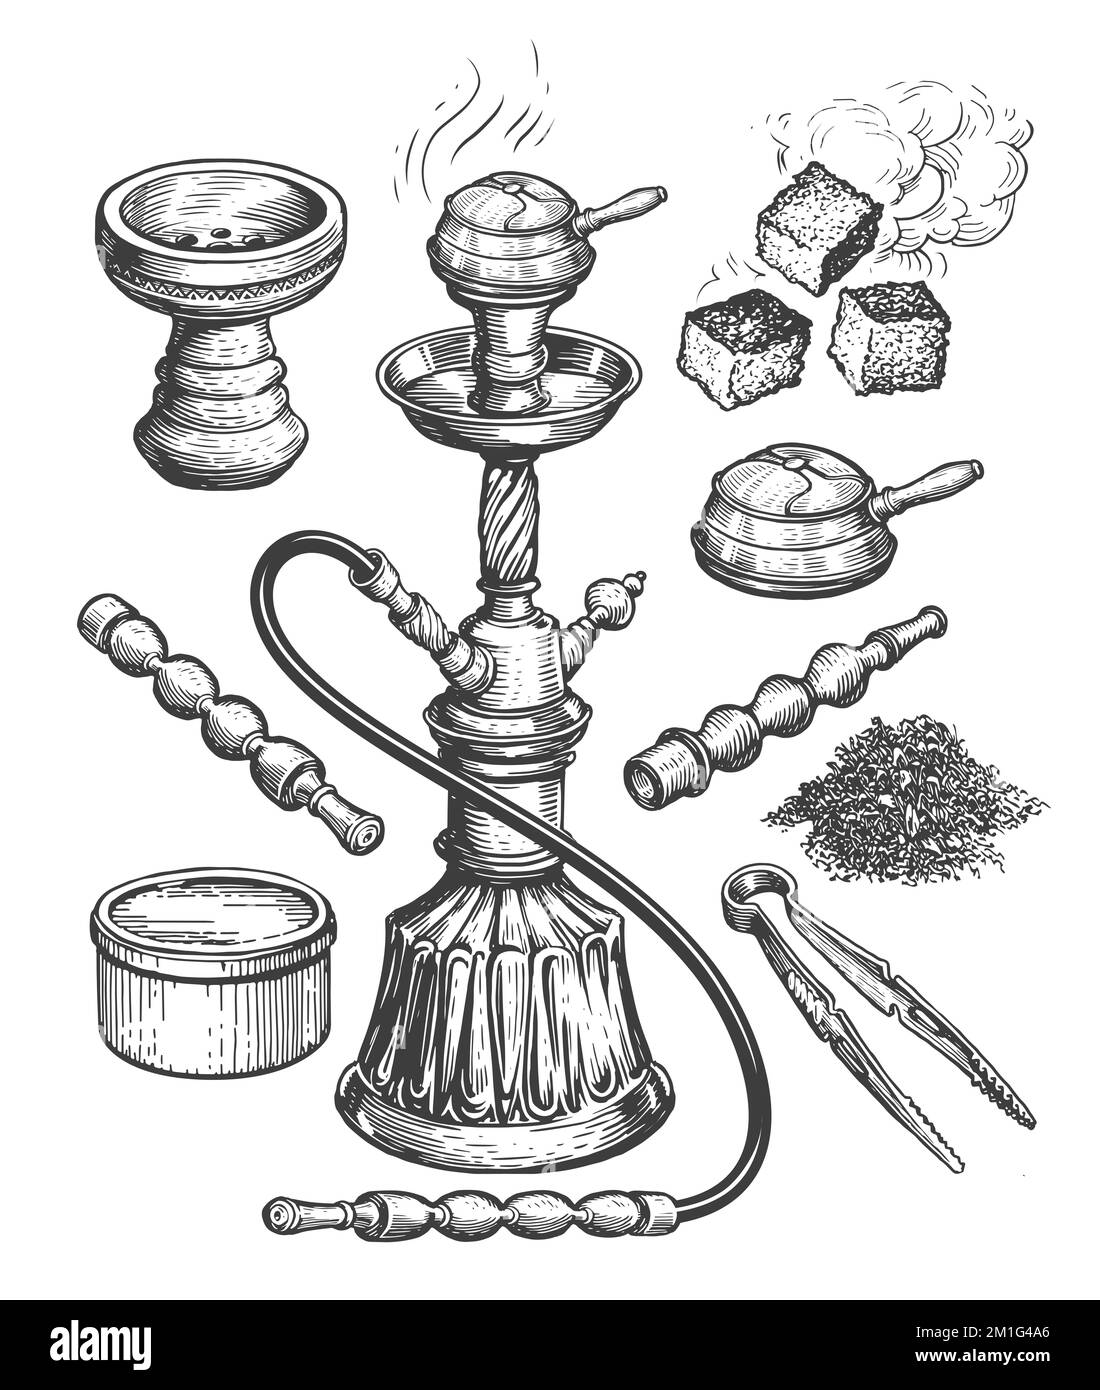 Skizze der Raucherkollektion und Accessoires. Shisha, Tabak, Zangen, Holzkohle. Handgezeichnete Vintage-Illustration Stockfoto